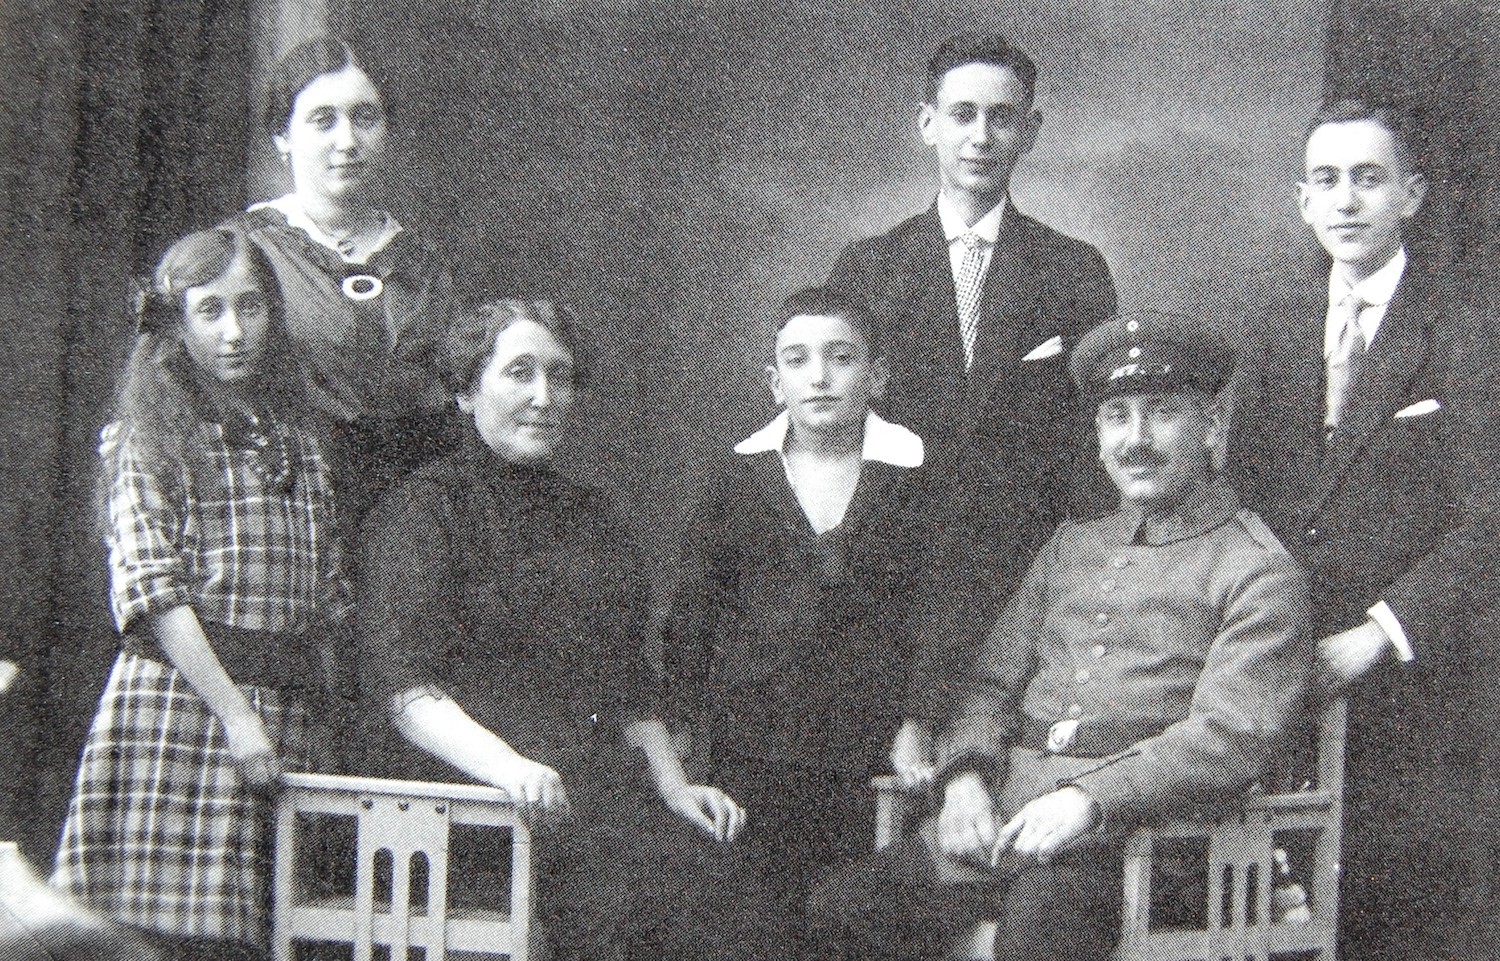 Familie Albert Rosenthal - Lina Seligmann (ca. 1918), v.l.n.r. Martha, Else, Lina, Fritz, Siegmund, Albert, Paul (Foto: Abrahamsohn)